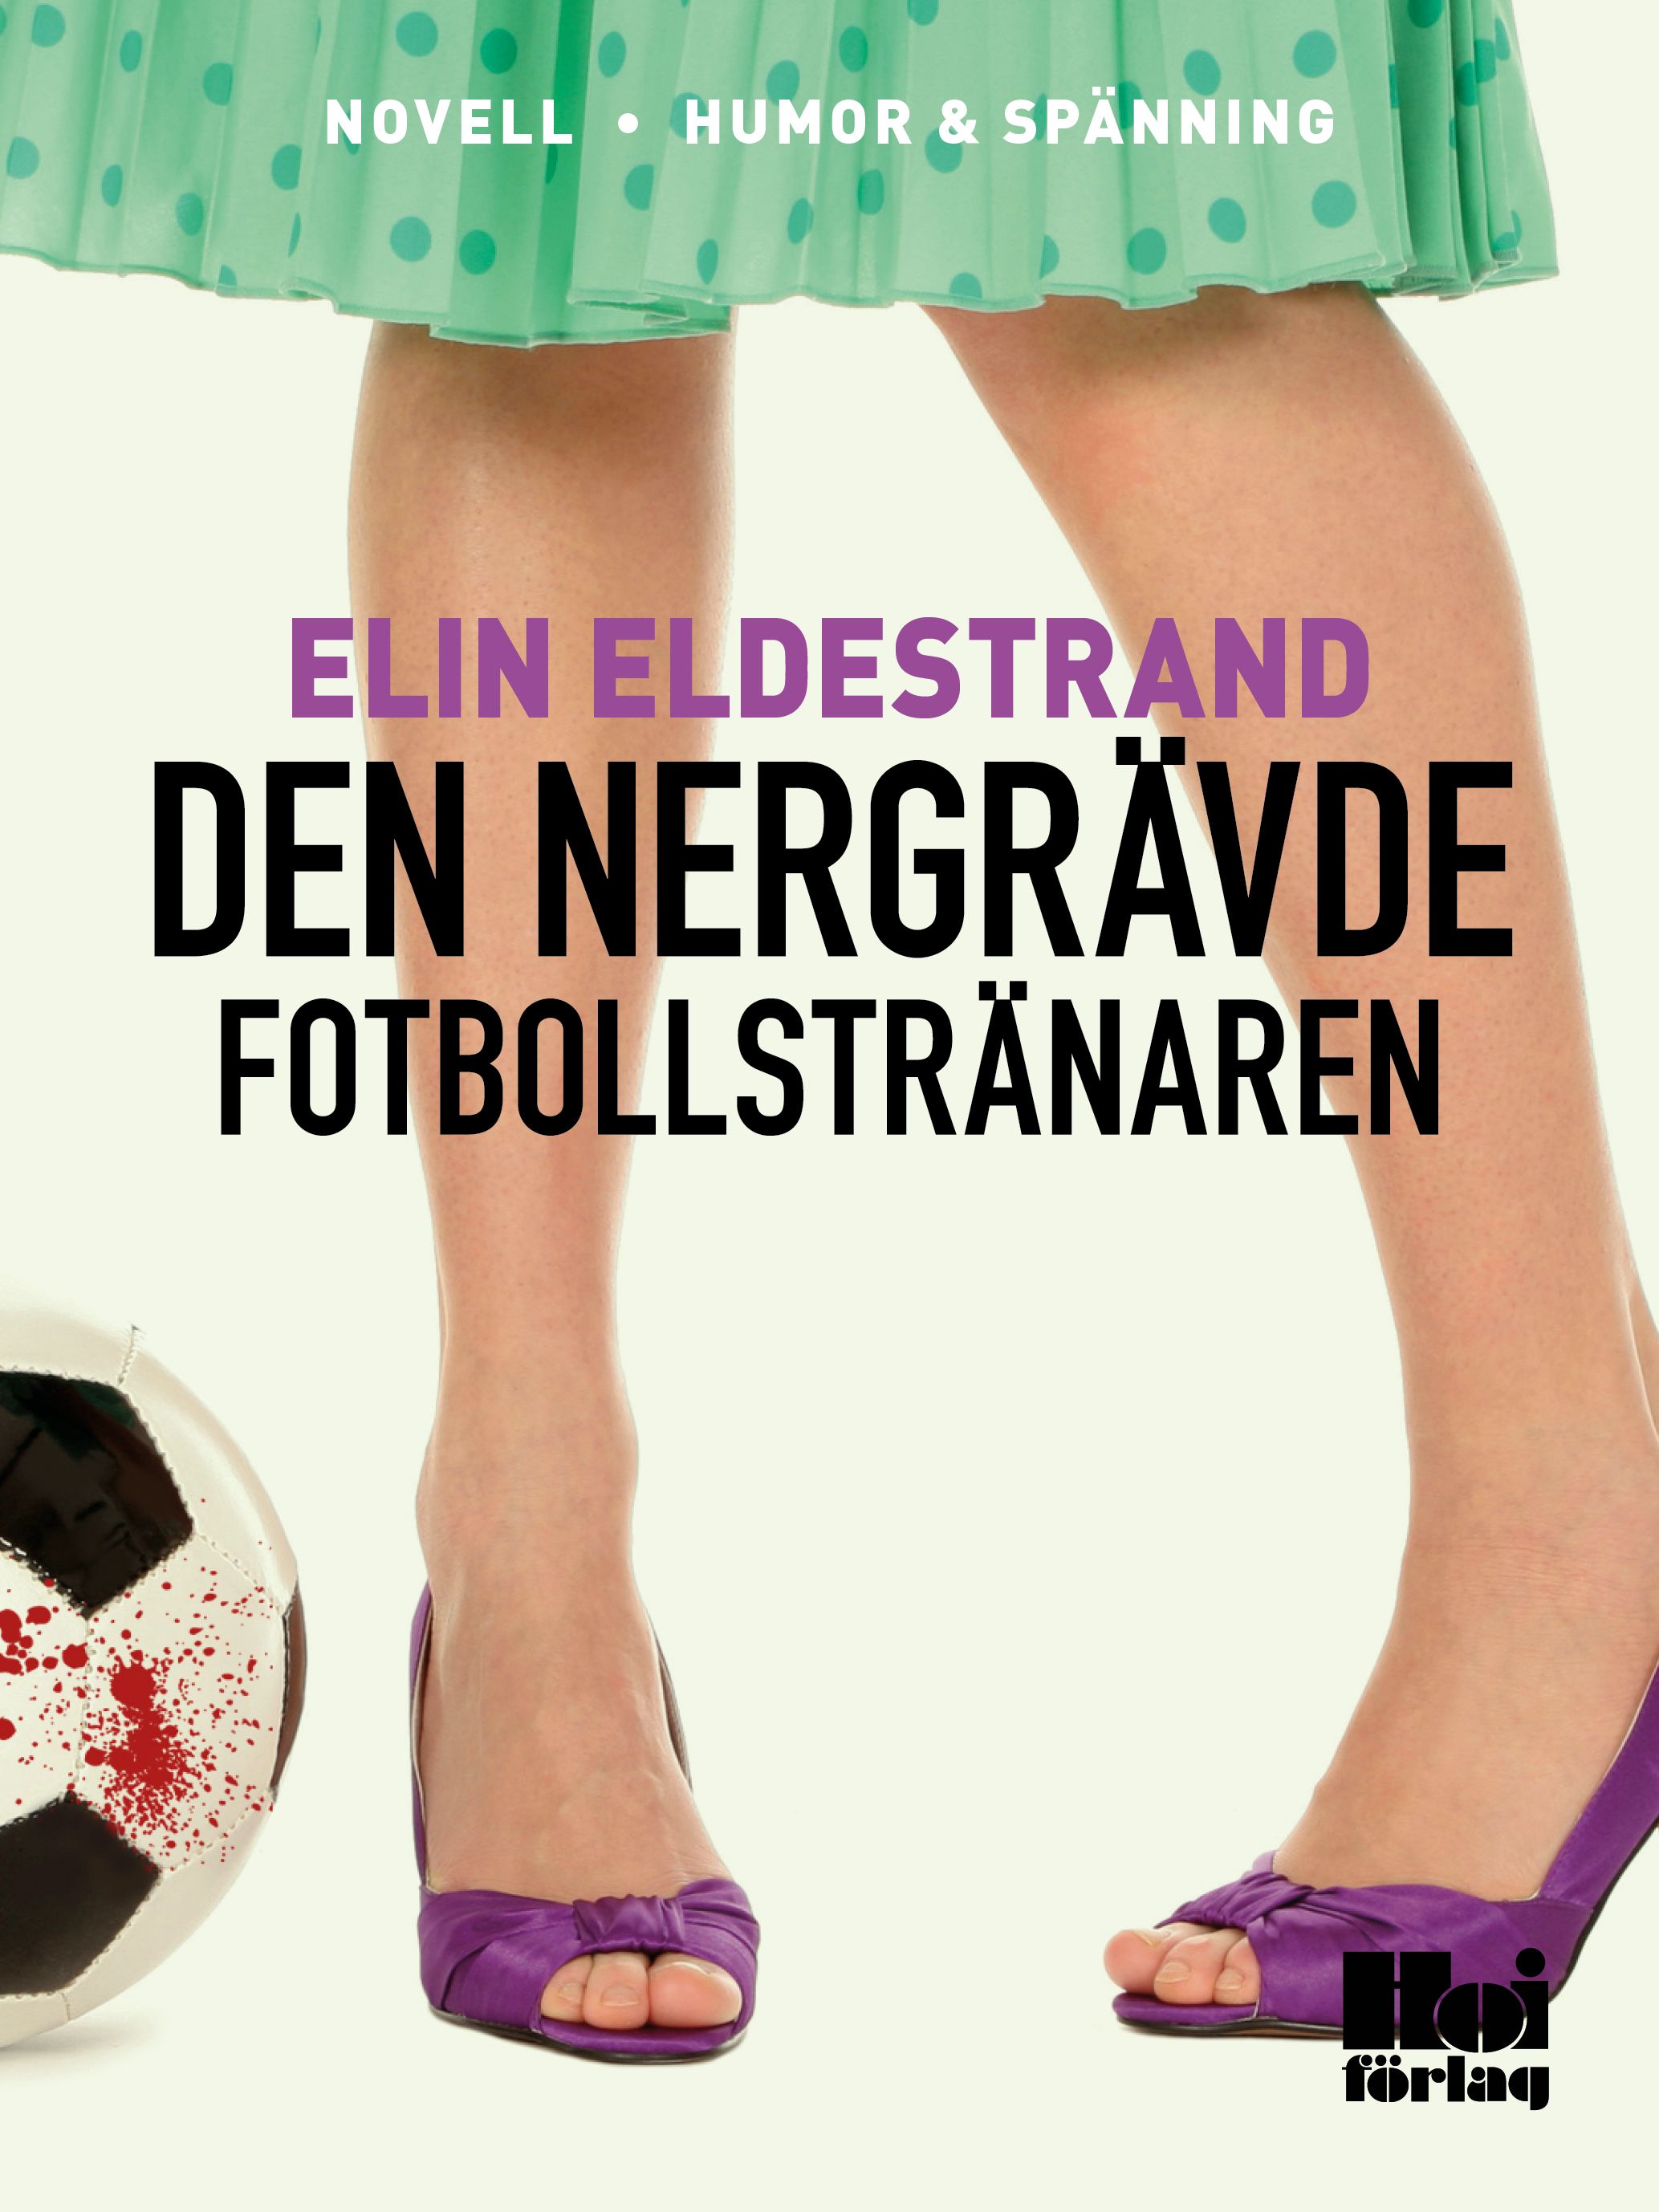 Den nergrävde fotbollstränaren, e-bok av Elin Eldestrand